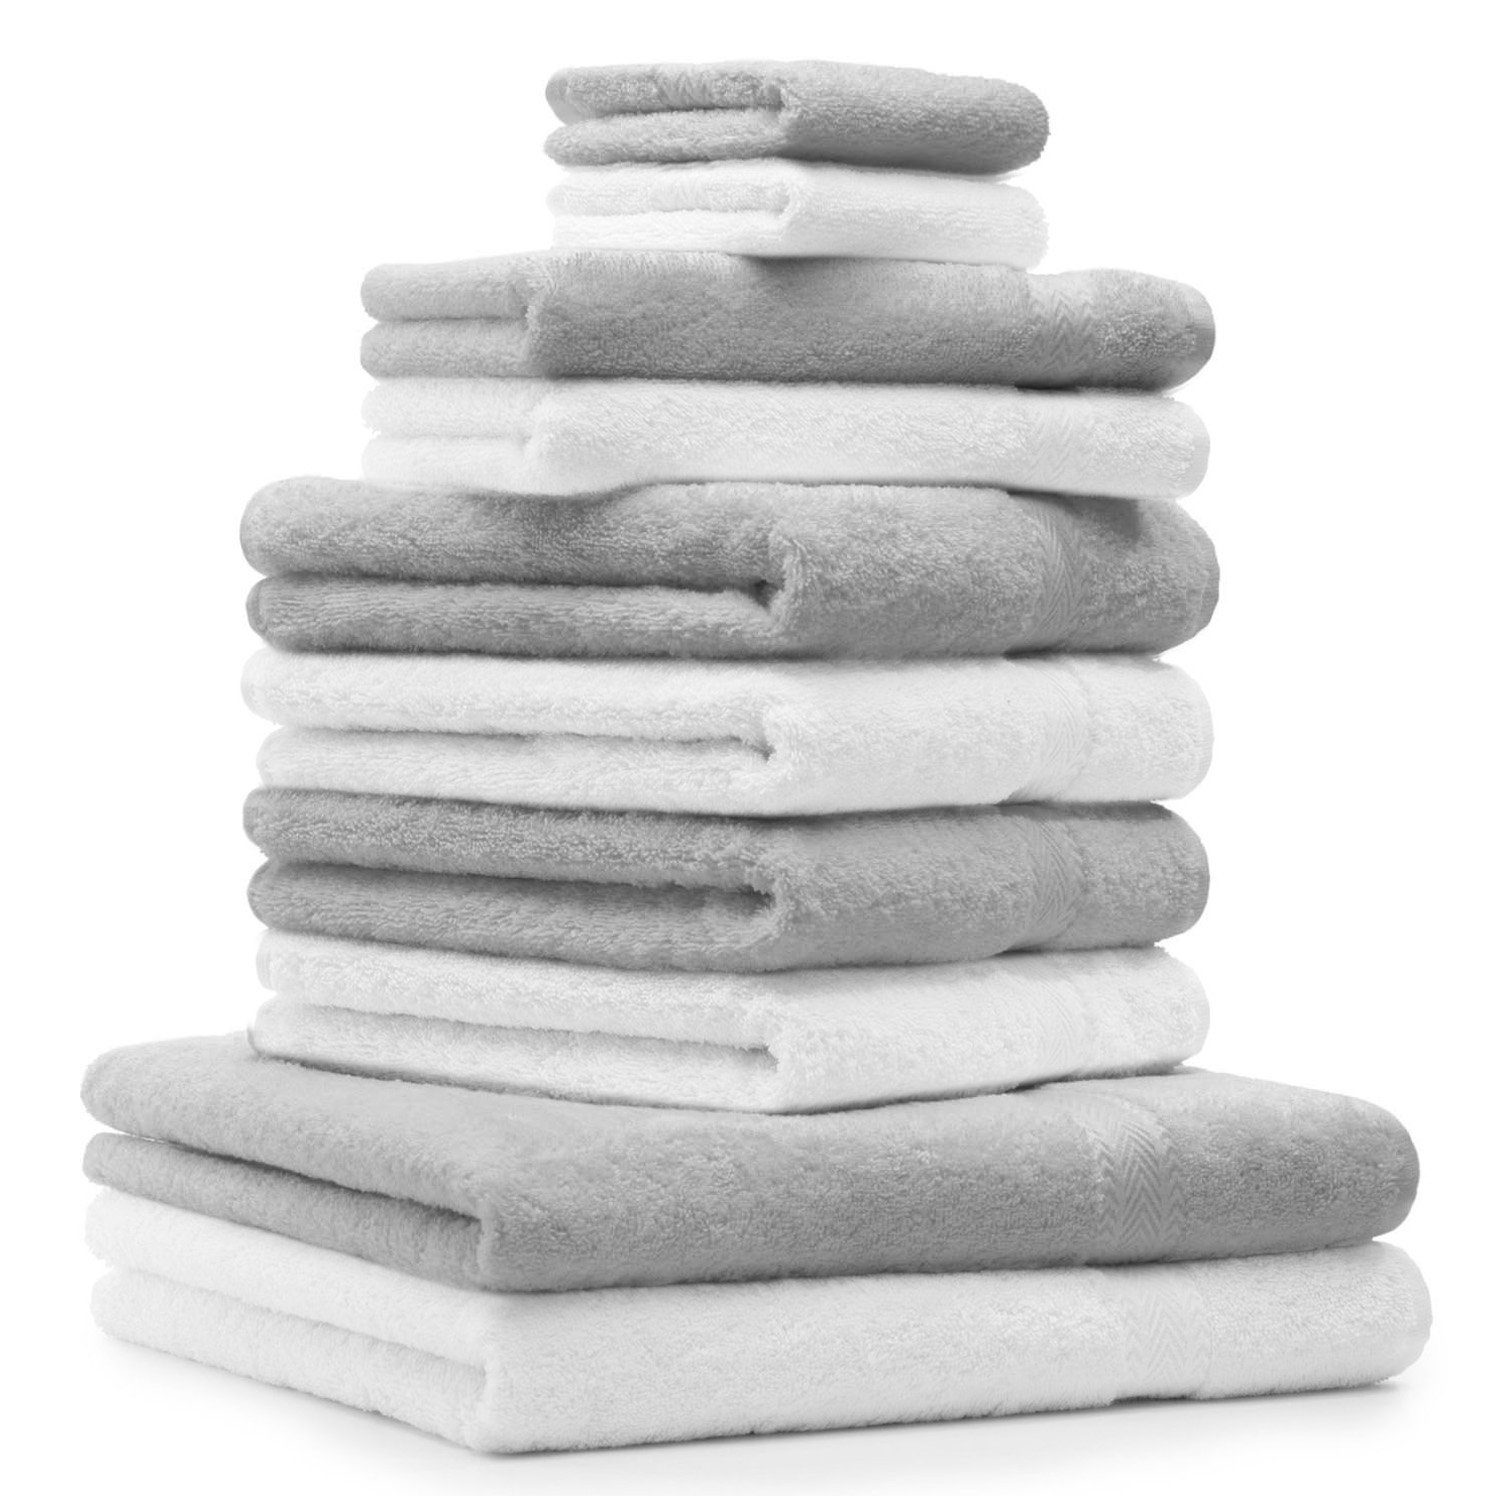 Betz Handtuch Set 10-TLG. Handtuch-Set Classic Farbe weiß und silbergrau, 100% Baumwolle